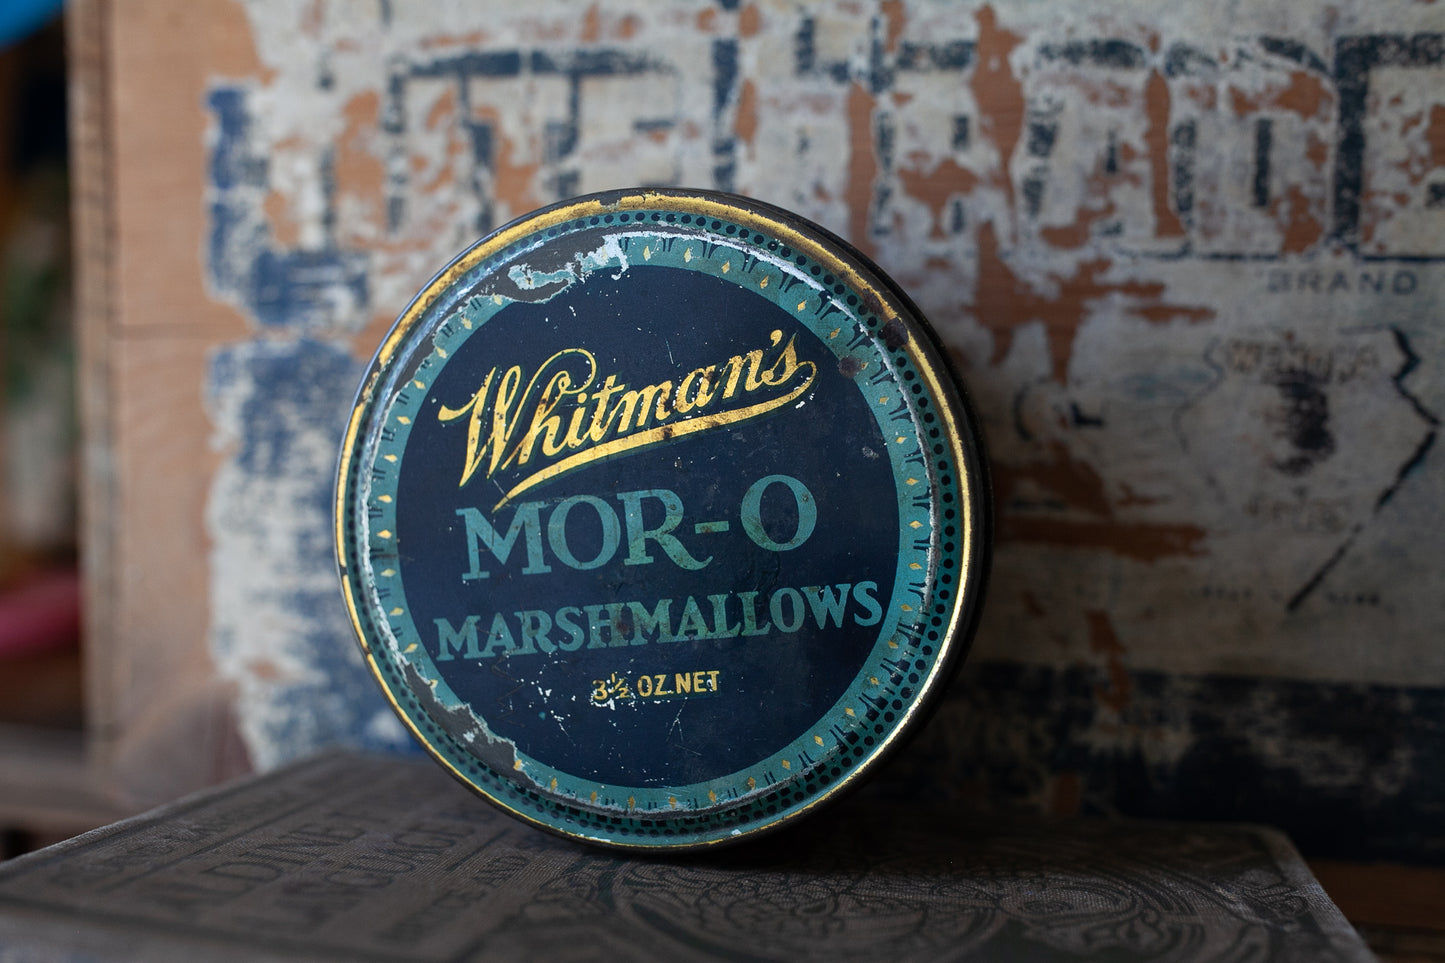 Vintage Marshmallow Tin -Whitman's Mor-O Marshmallows 3.5 oz net Tin